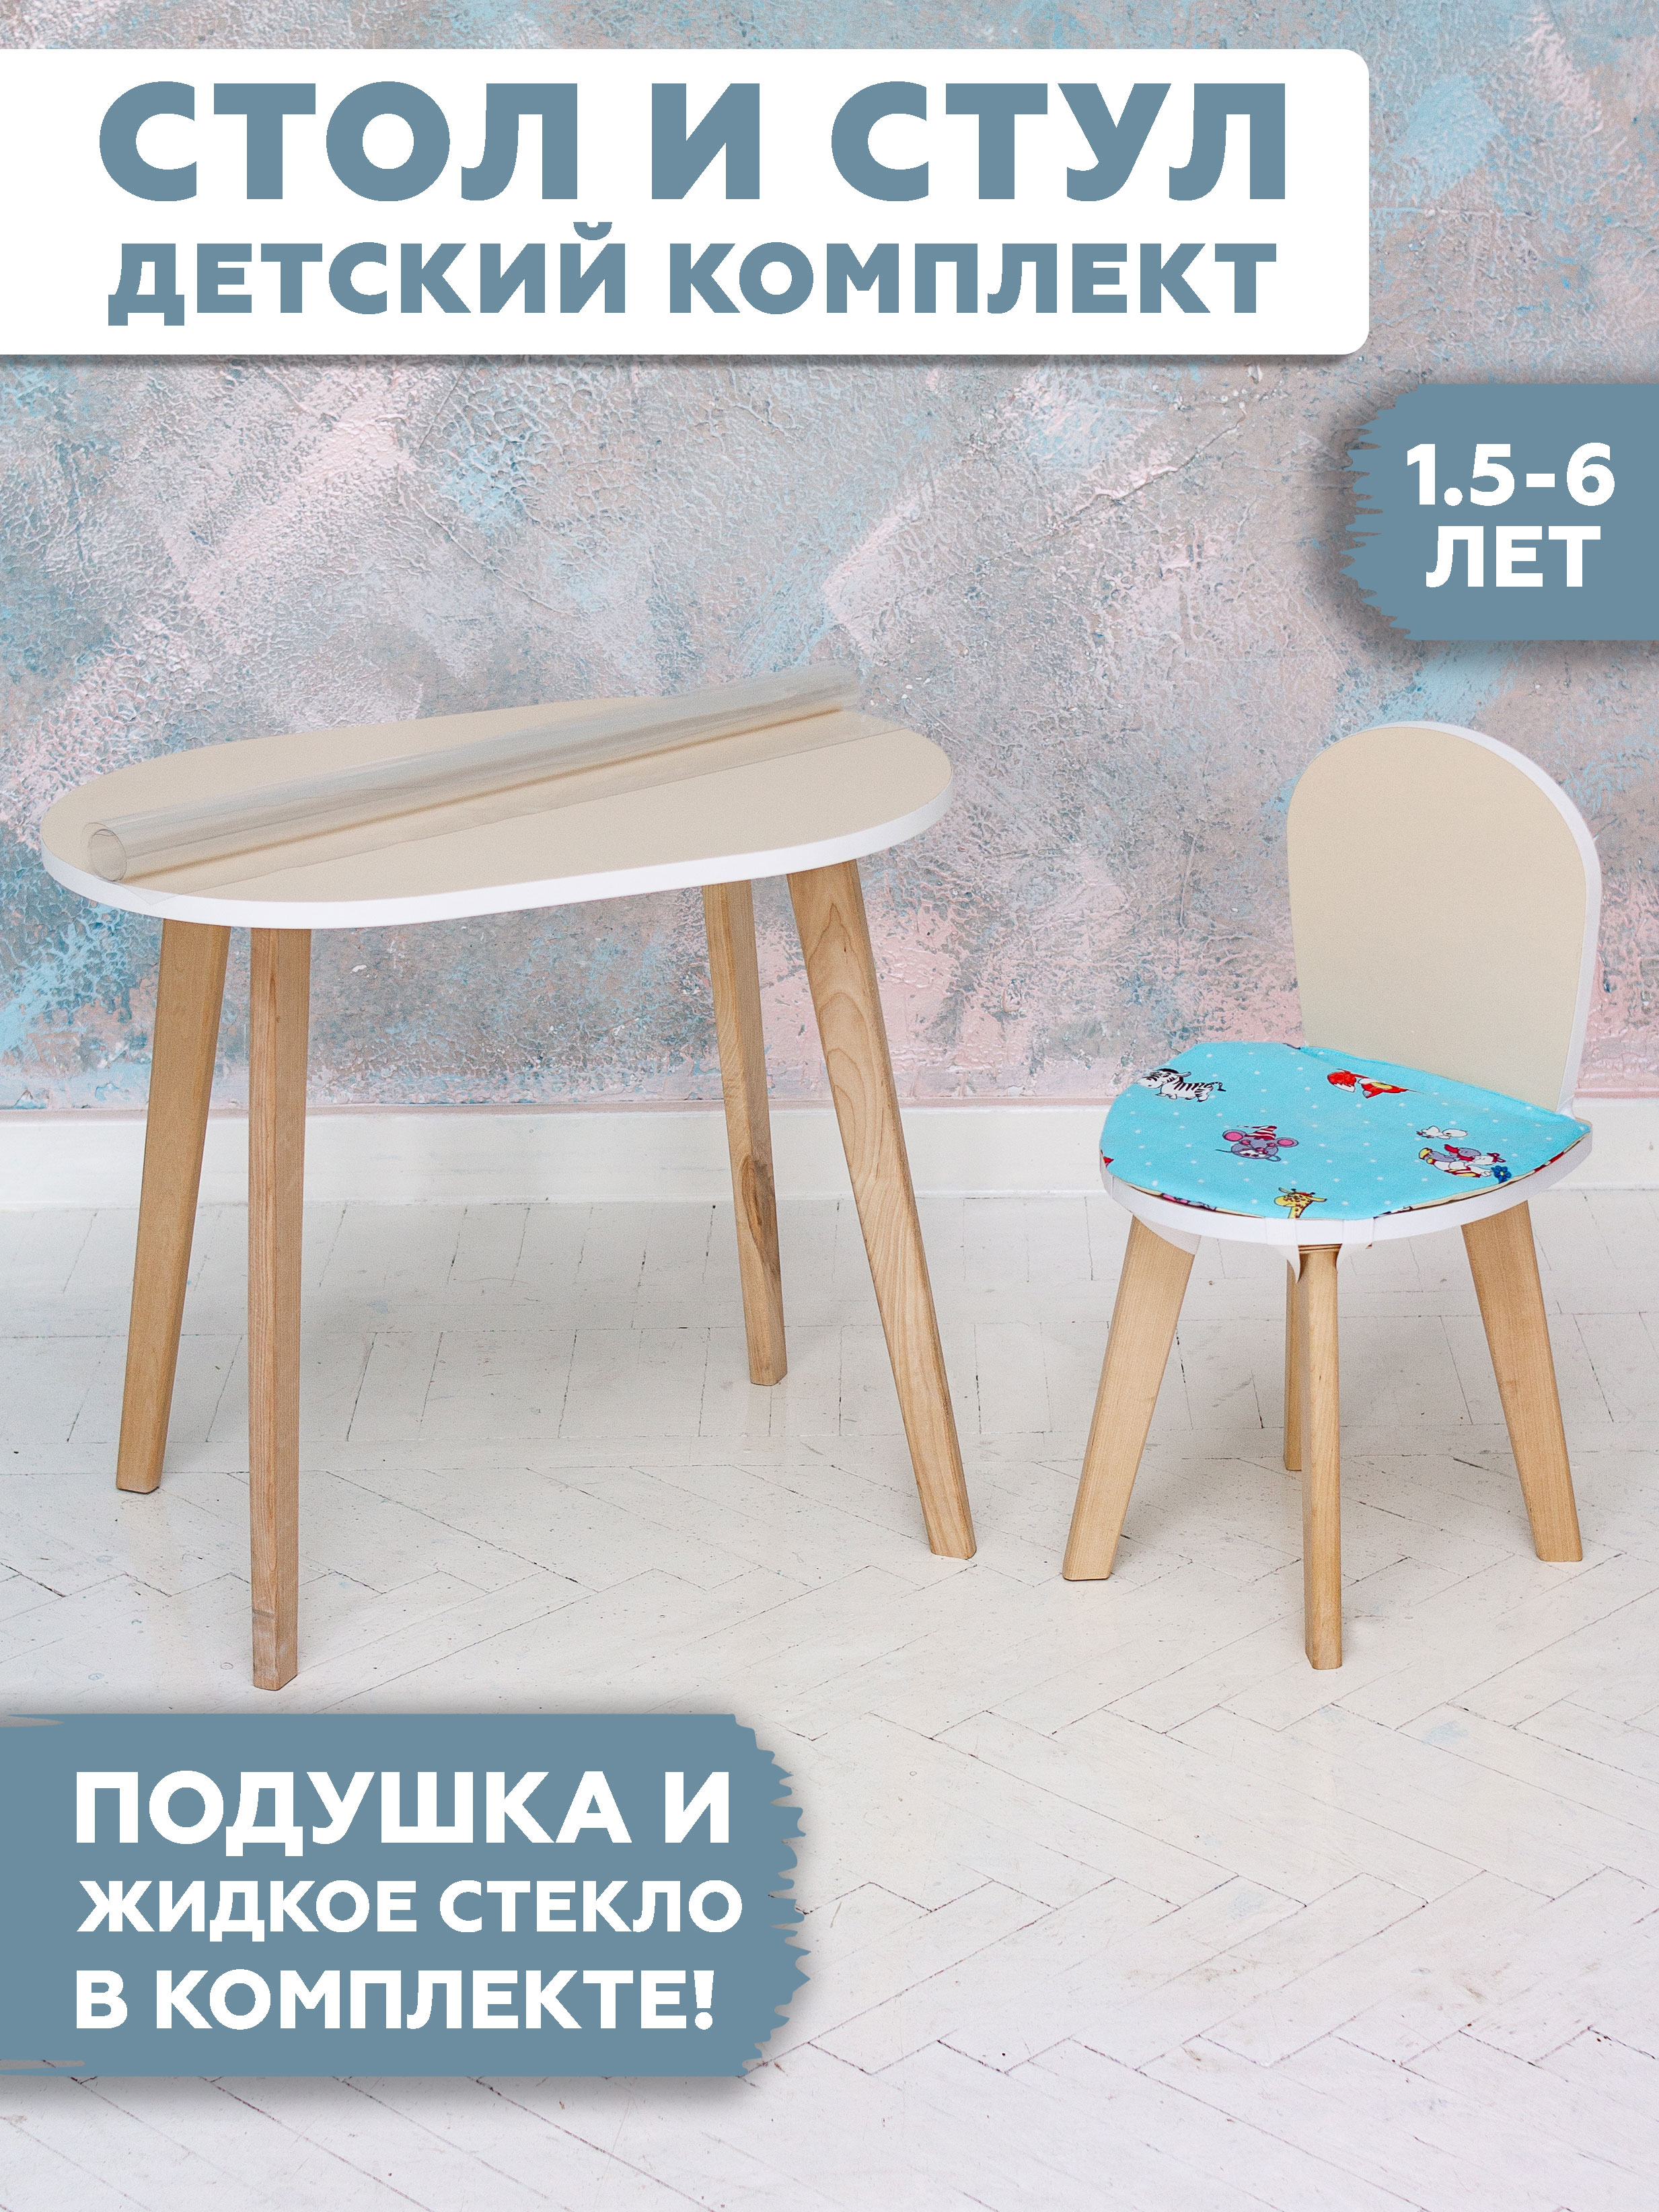 Комплект детской мебели RuLes столик и стульчик симба бежевый плюс домик для кошек с двумя полками овальный вход джут 37 х 37 х 111 см бежевый